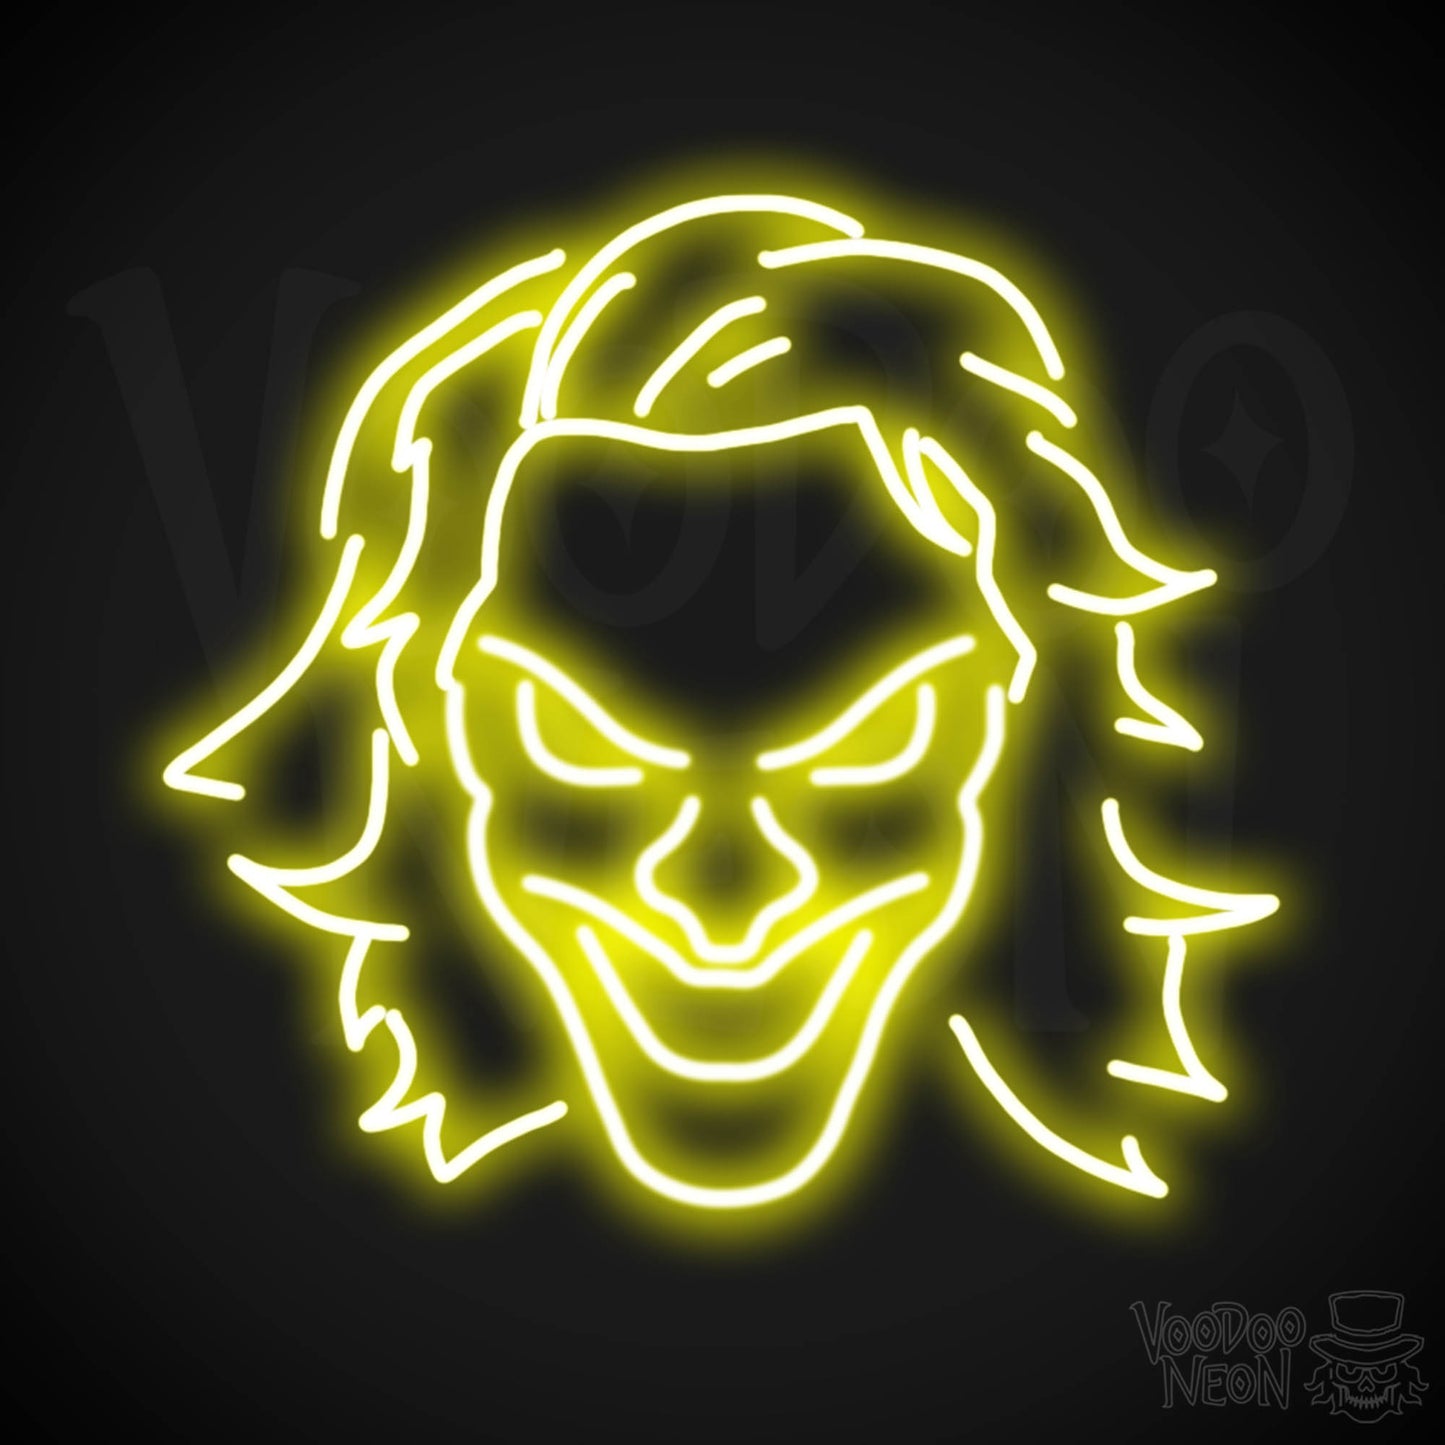 Joker Neon Sign - Neon Joker Sign - Joker LED Wall Art - Color Yellow